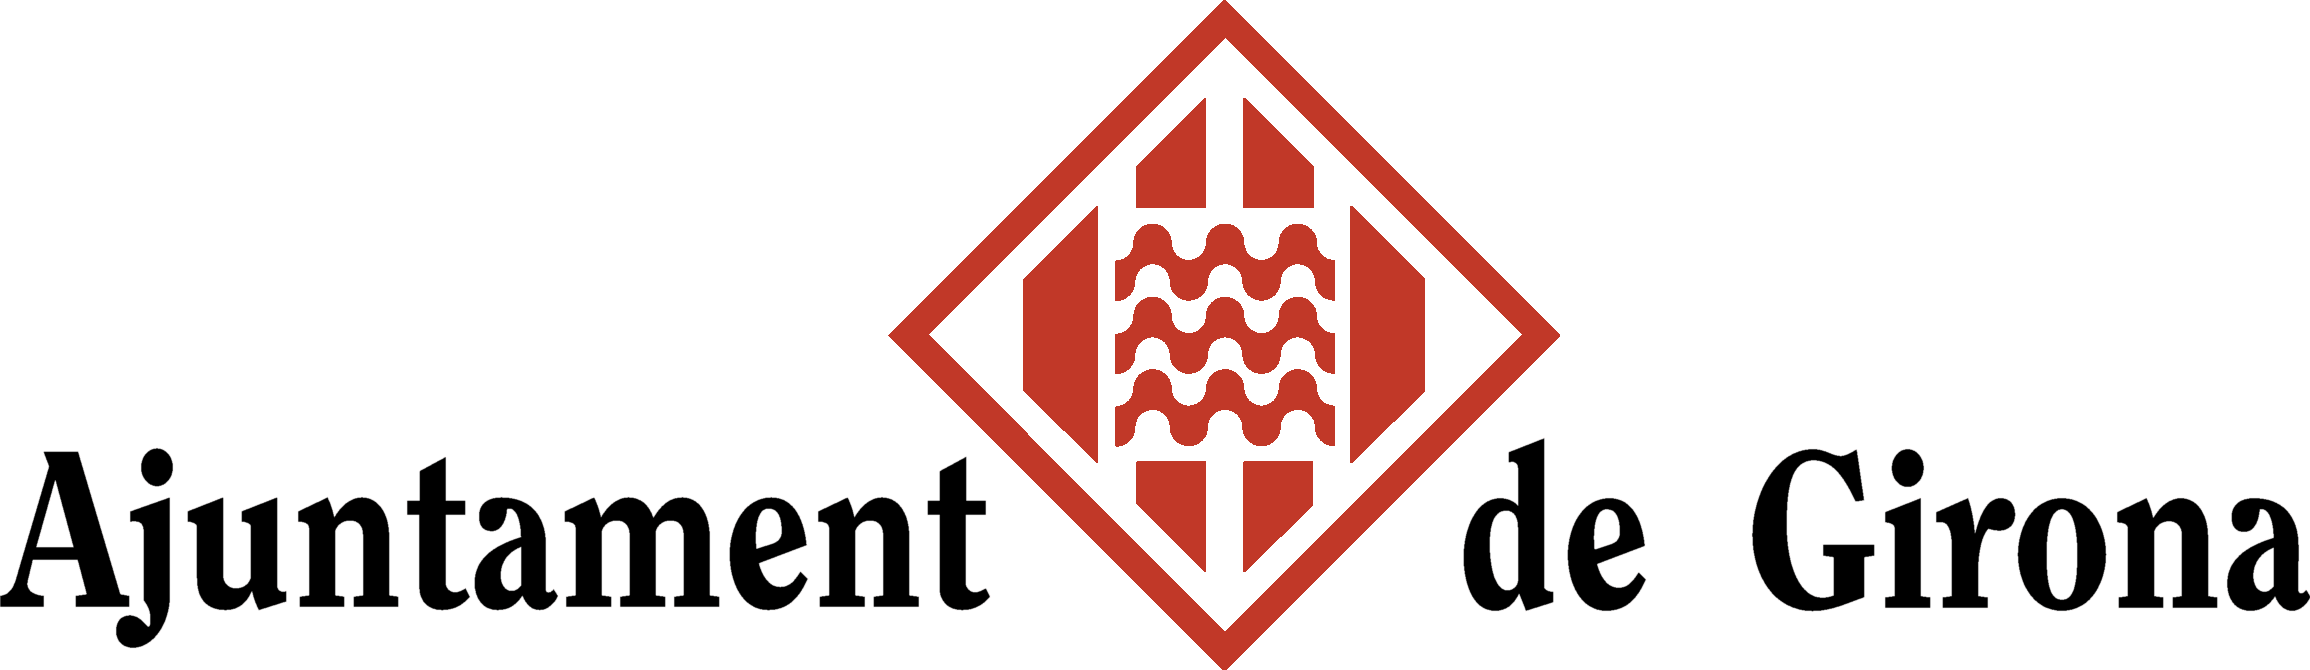 Logotip de l&#39;Ajuntament de Girona | Oficina de Comunicació - Ajuntament de Girona